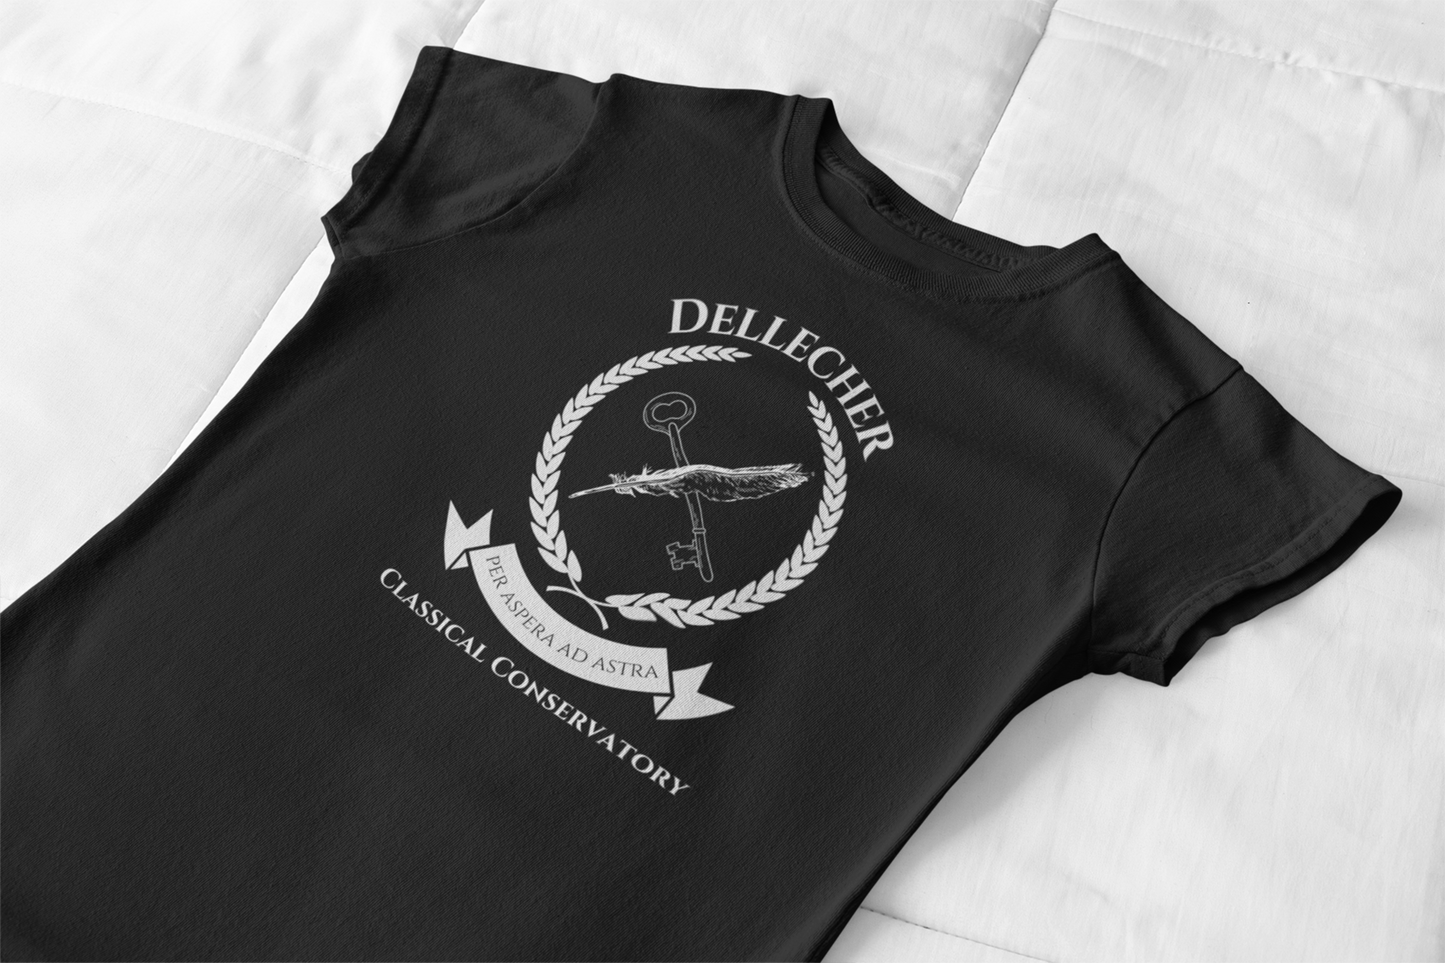 Dellecher Classical Conservatory Women's T-Shirt